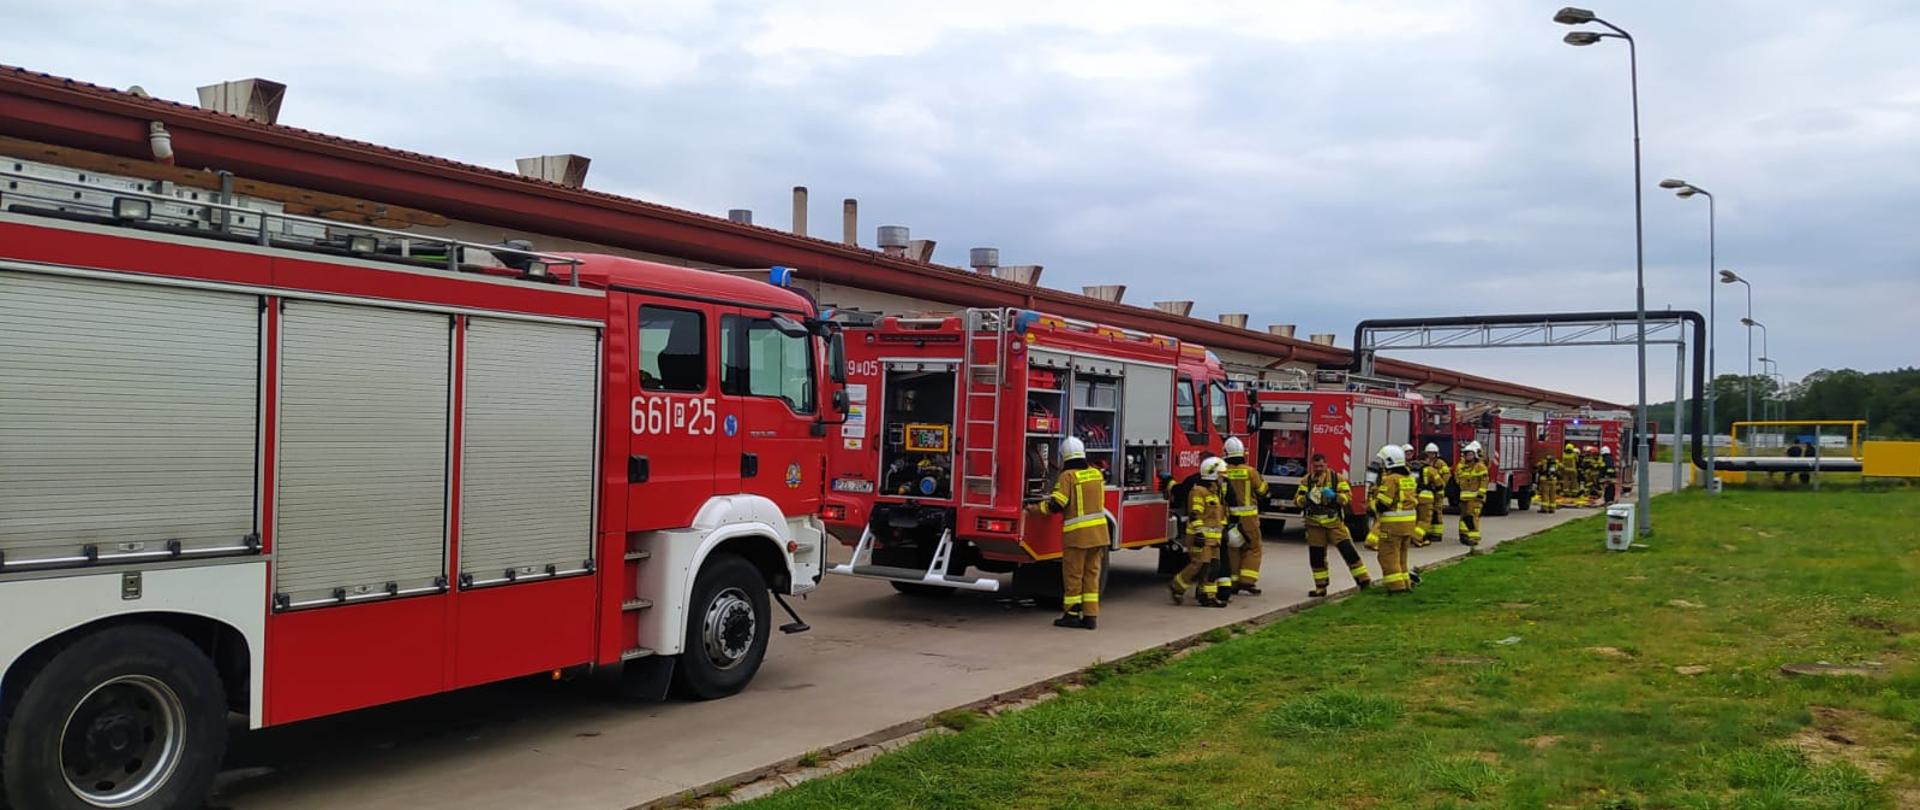 Do realizacji założenia zadysponowanych zostało łącznie 8 pojazdów ratowniczo-gaśniczych i specjalnych w obsadzie 33 strażaków.